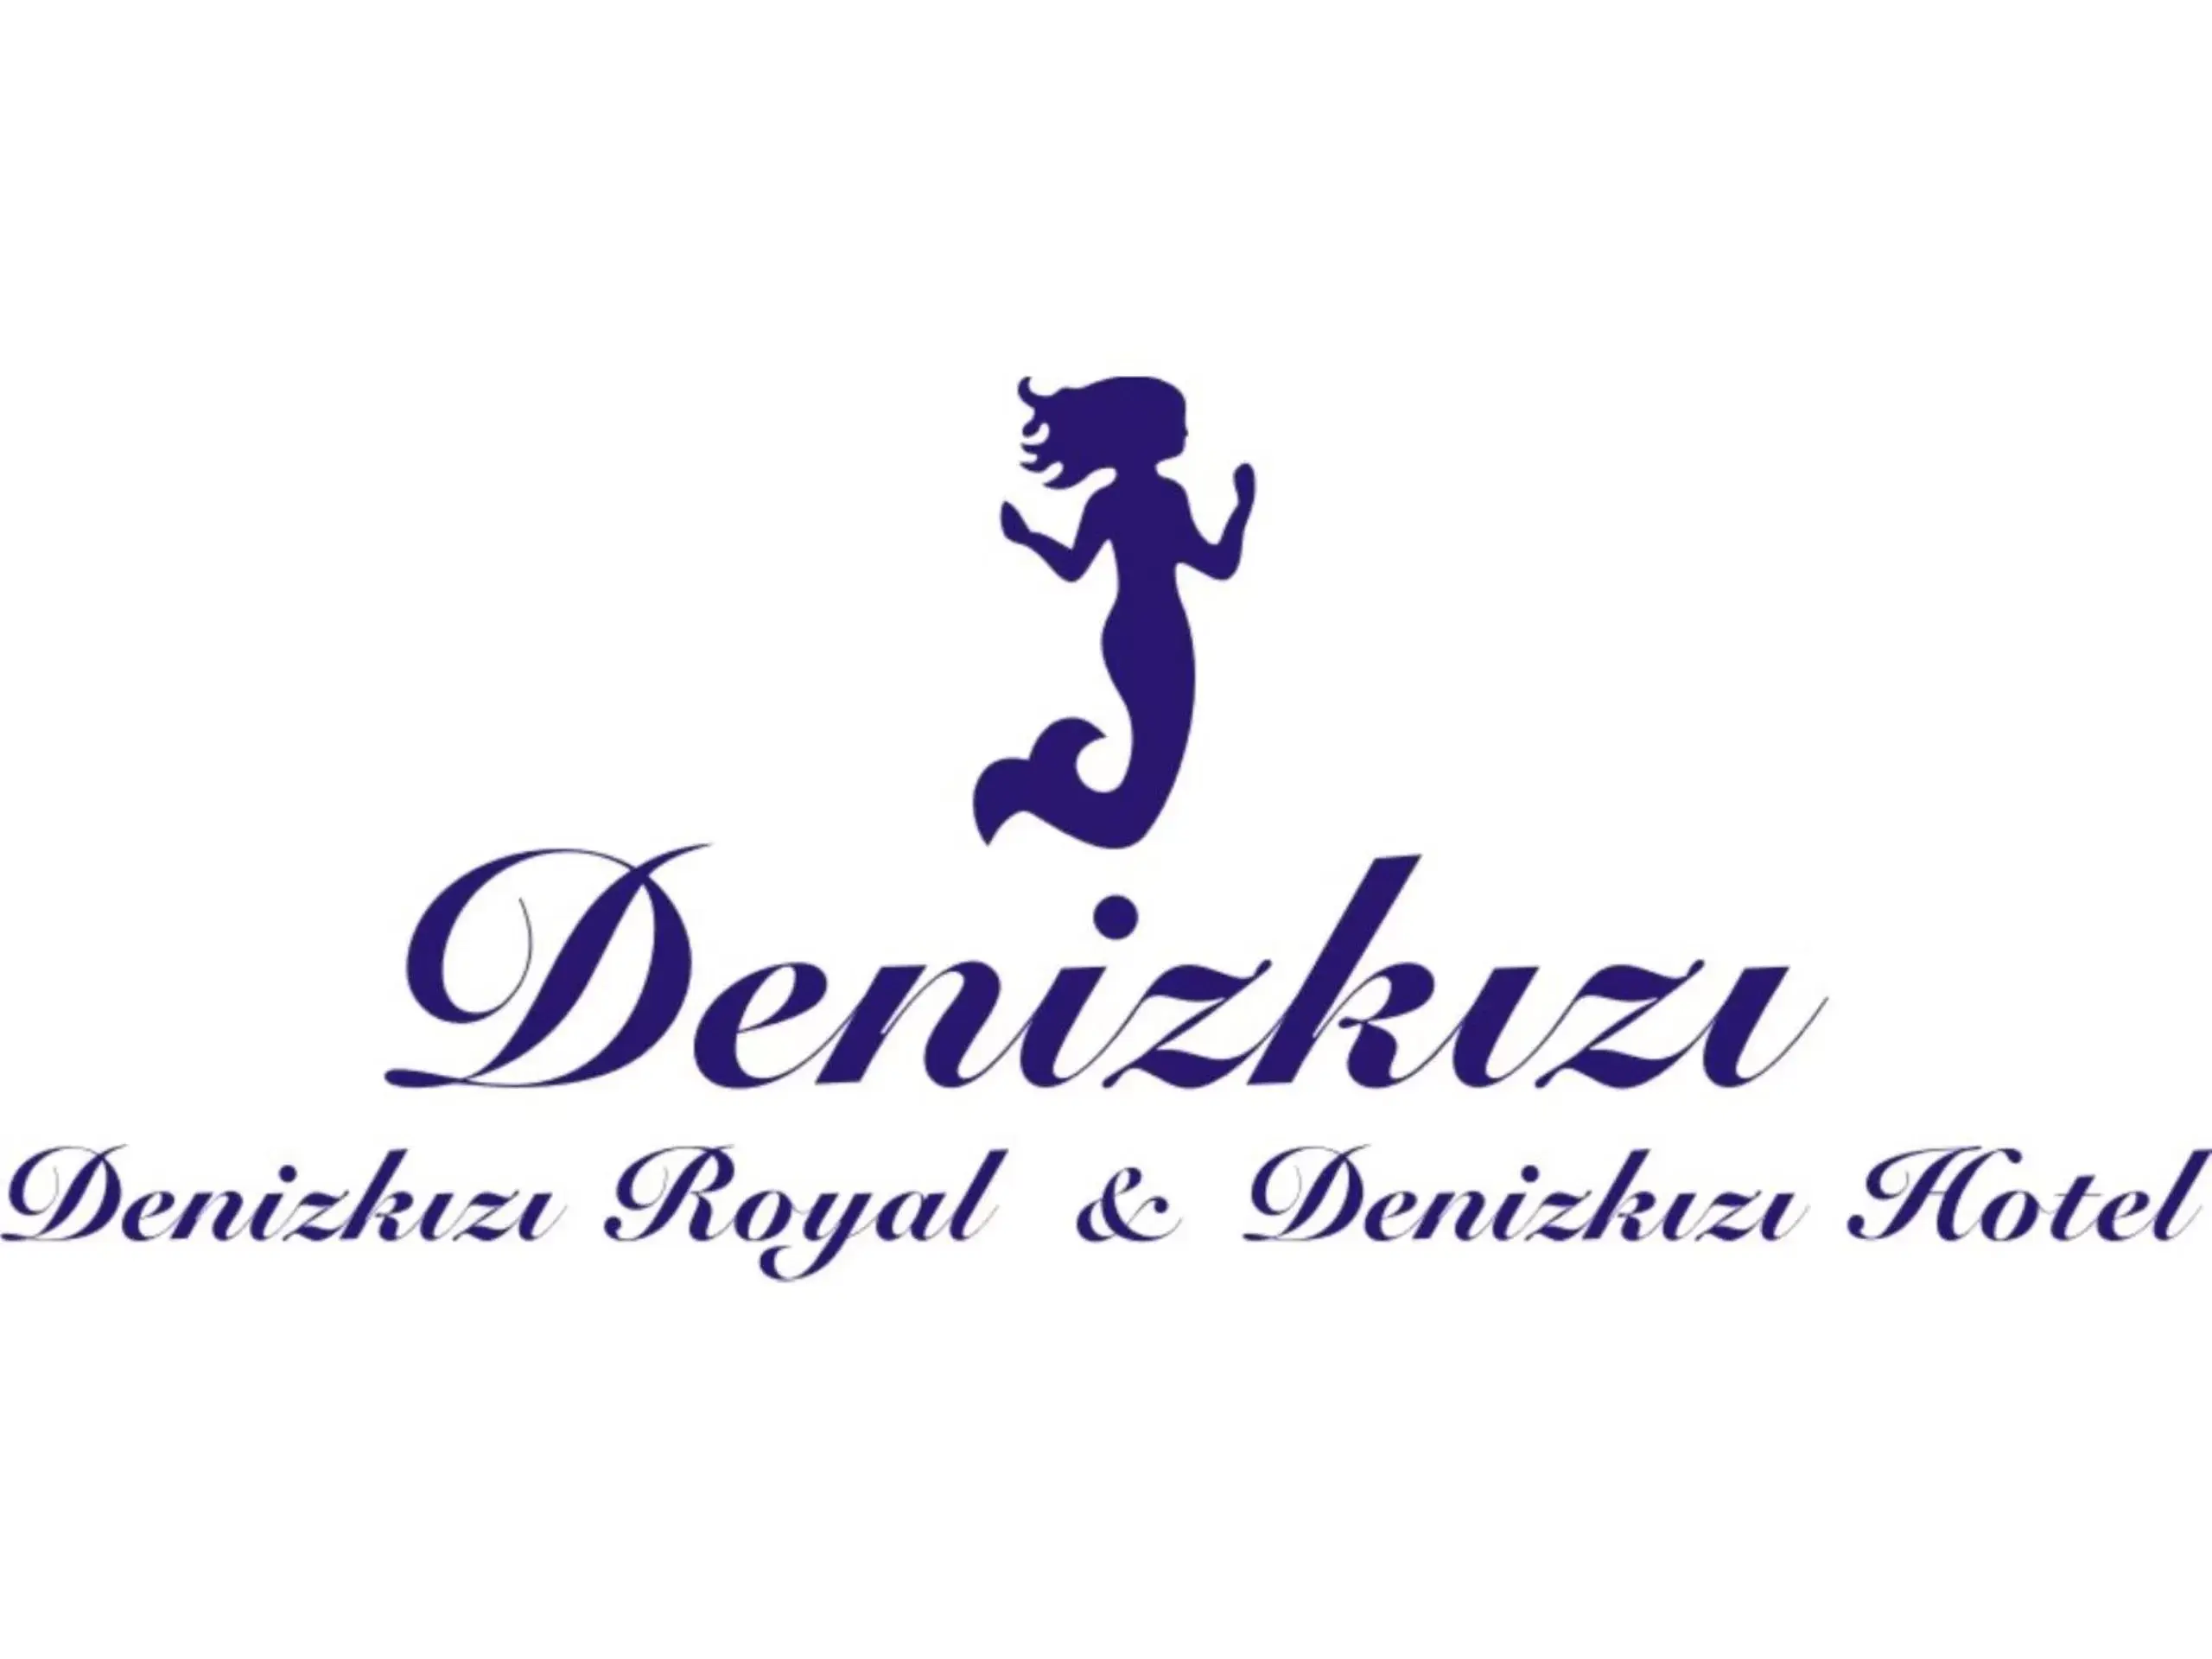 Property logo or sign in Denizkizi Hotel